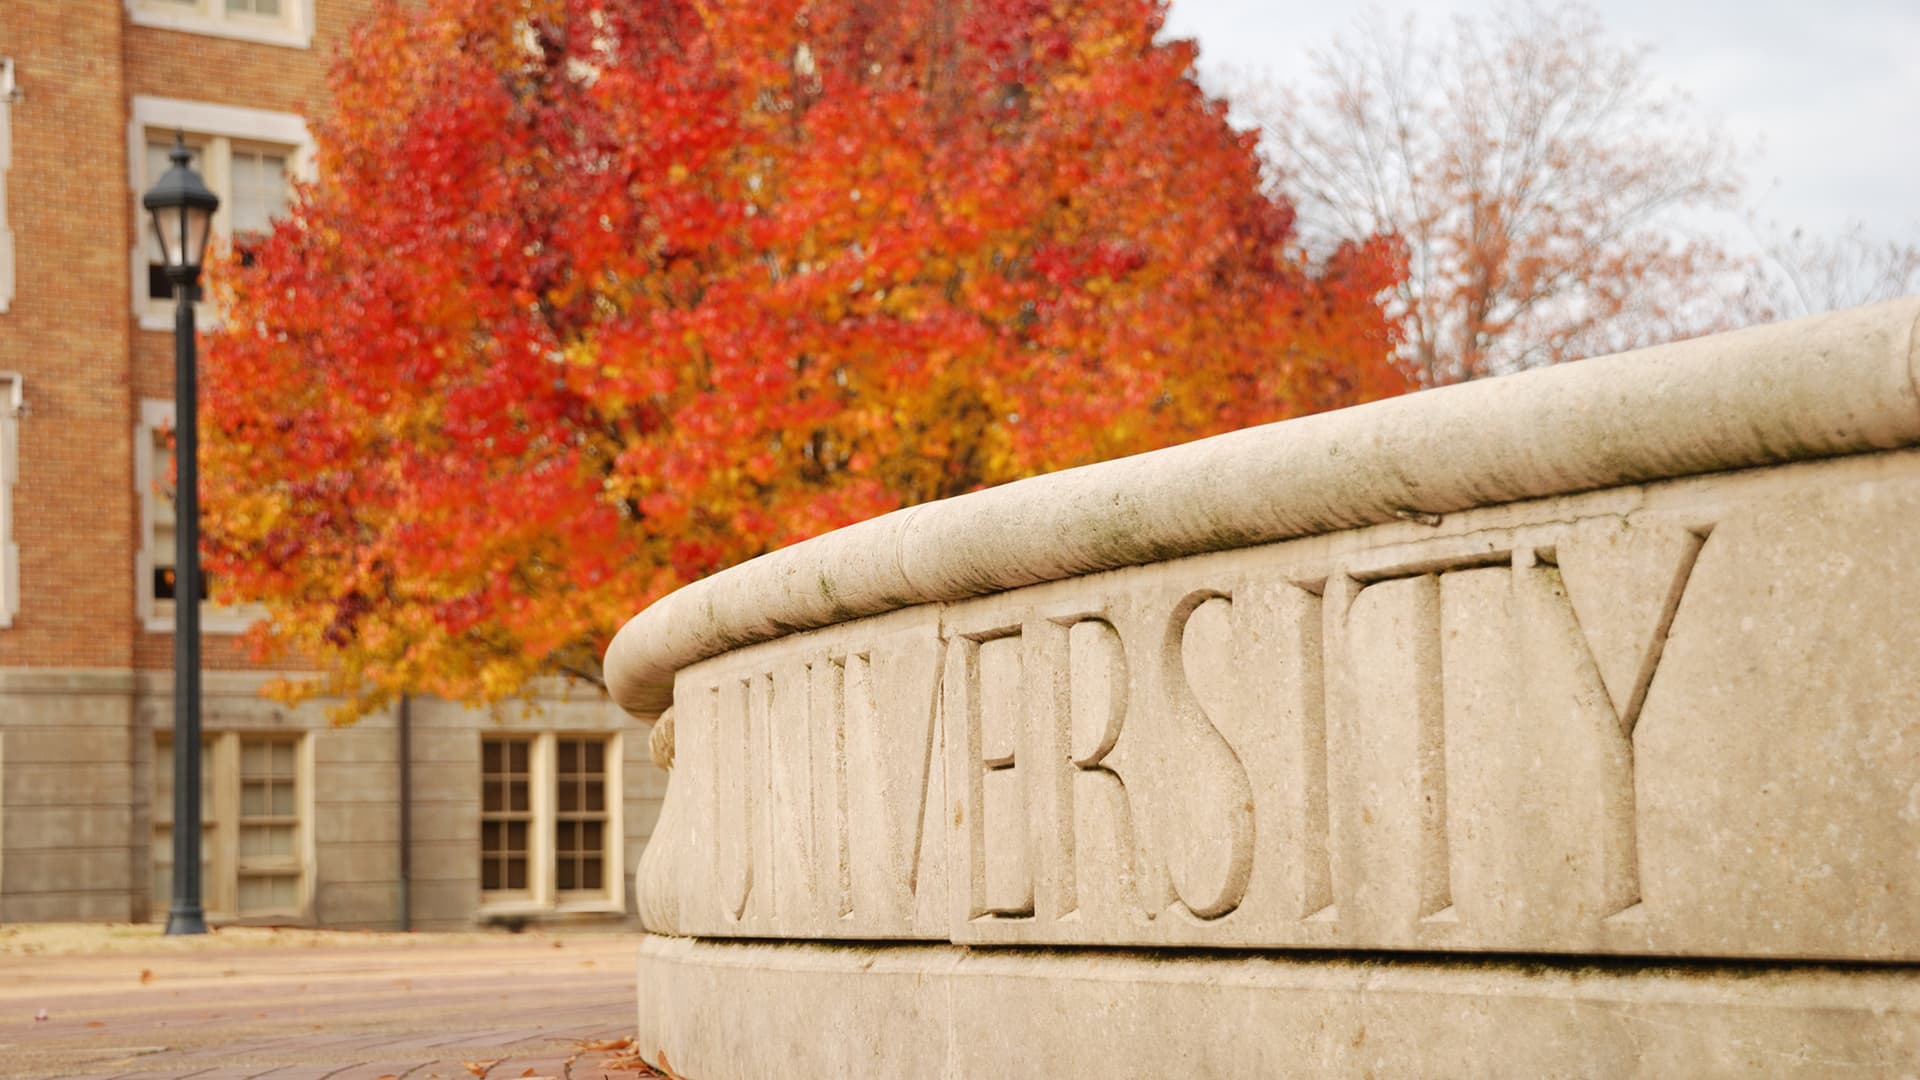 University sign in autumn